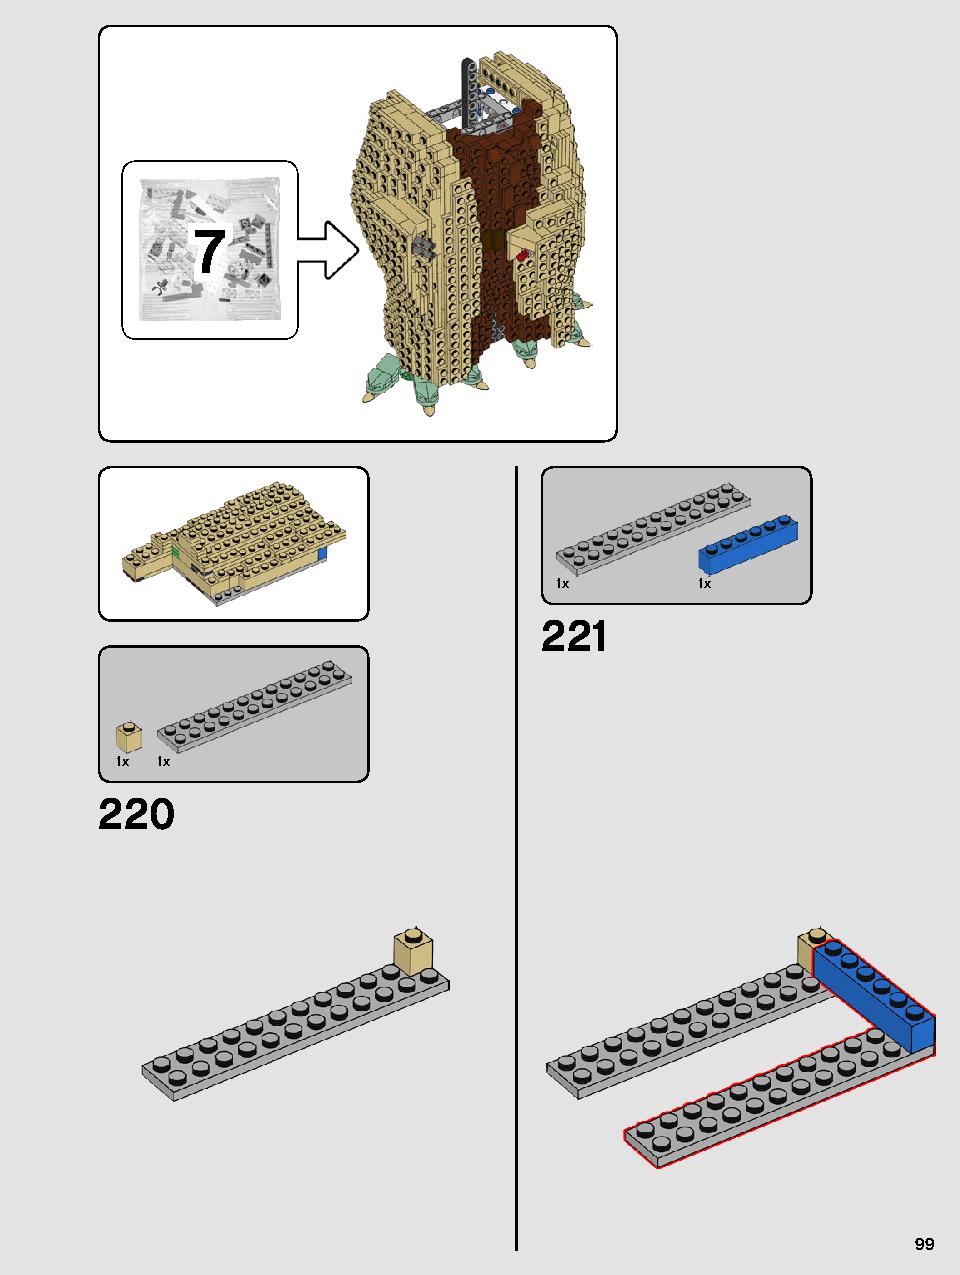 ヨーダ™ 75255 レゴの商品情報 レゴの説明書・組立方法 99 page